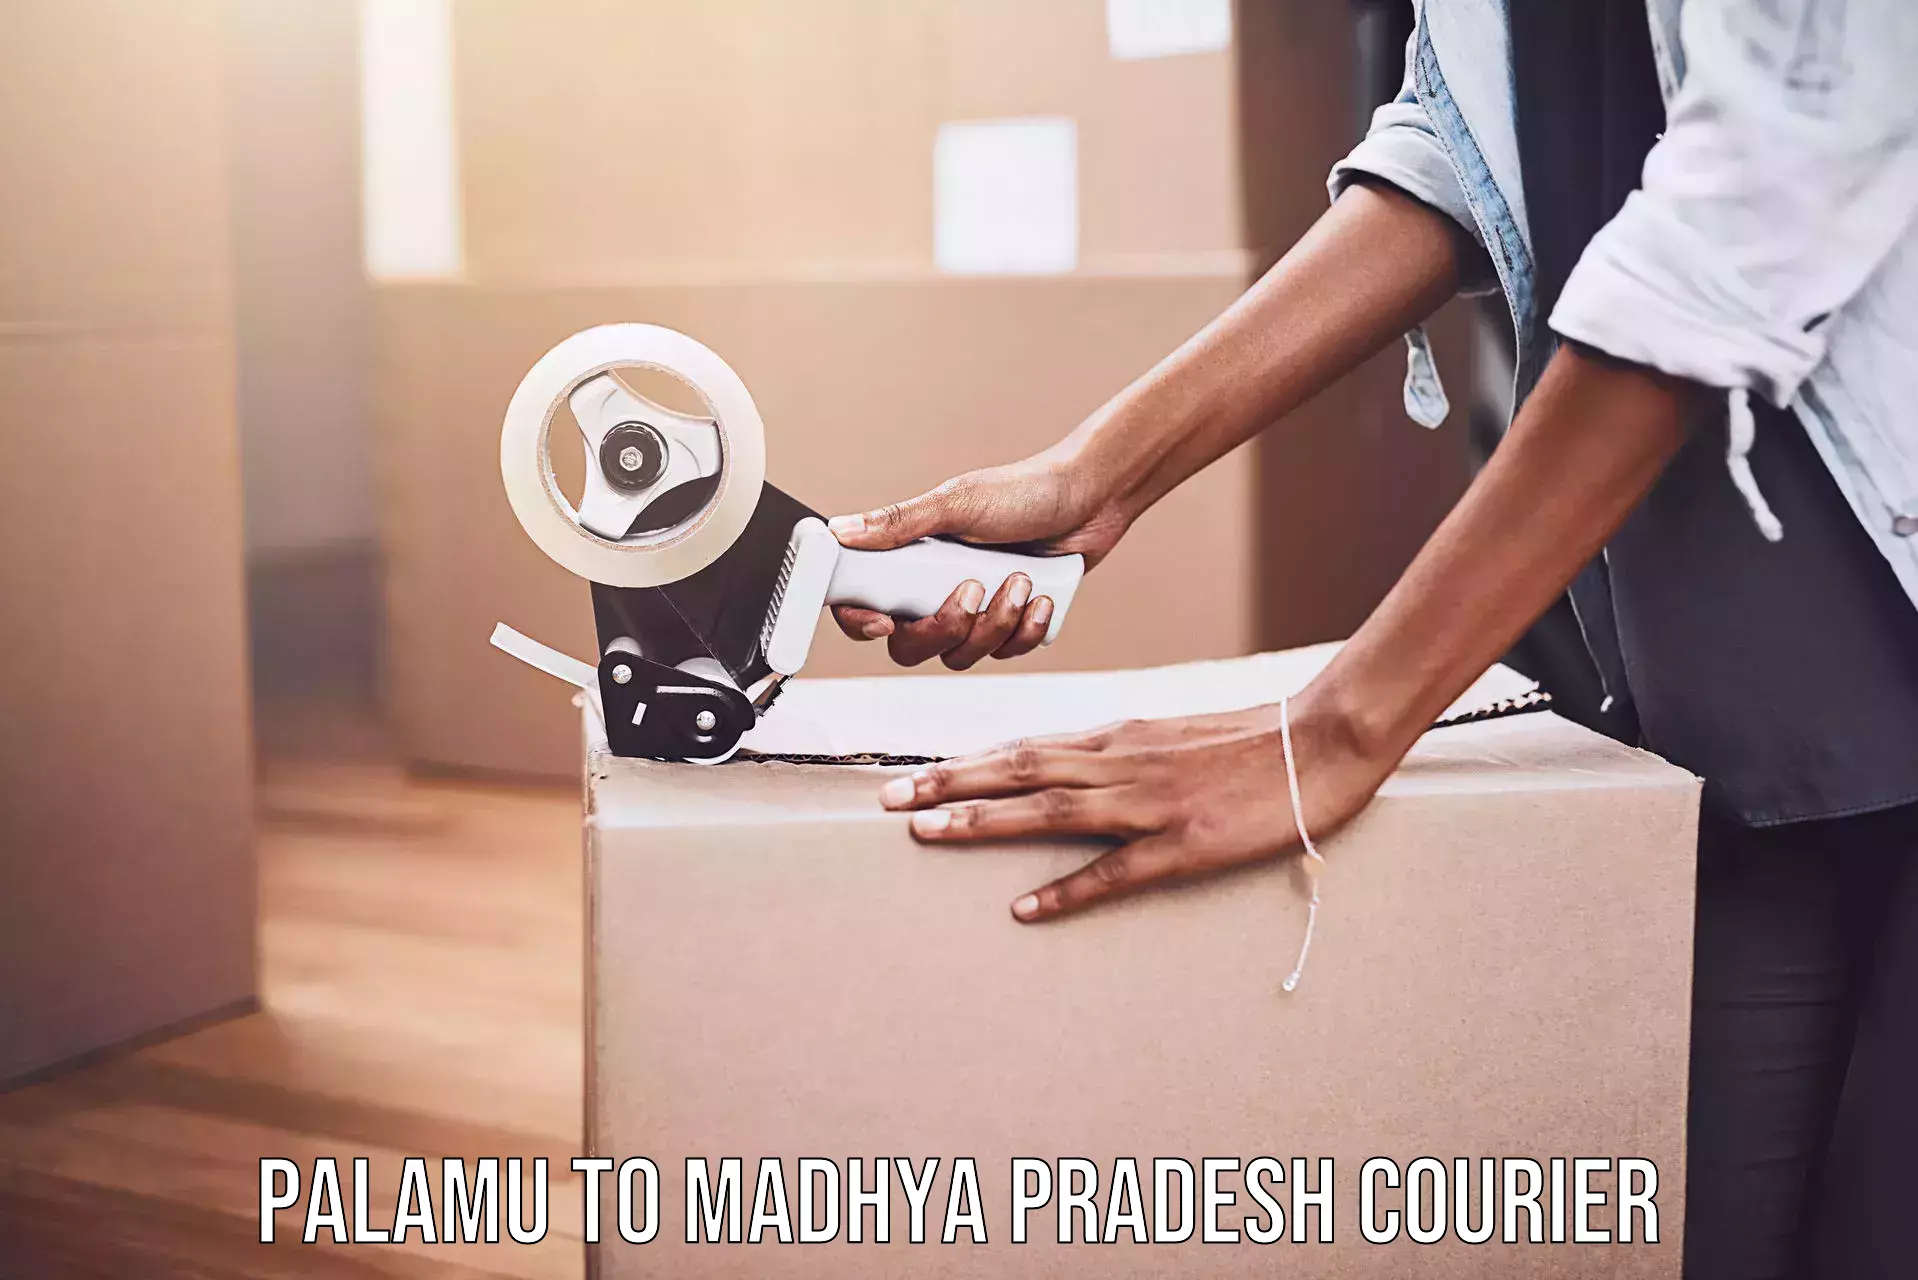 Efficient order fulfillment Palamu to Madhya Pradesh